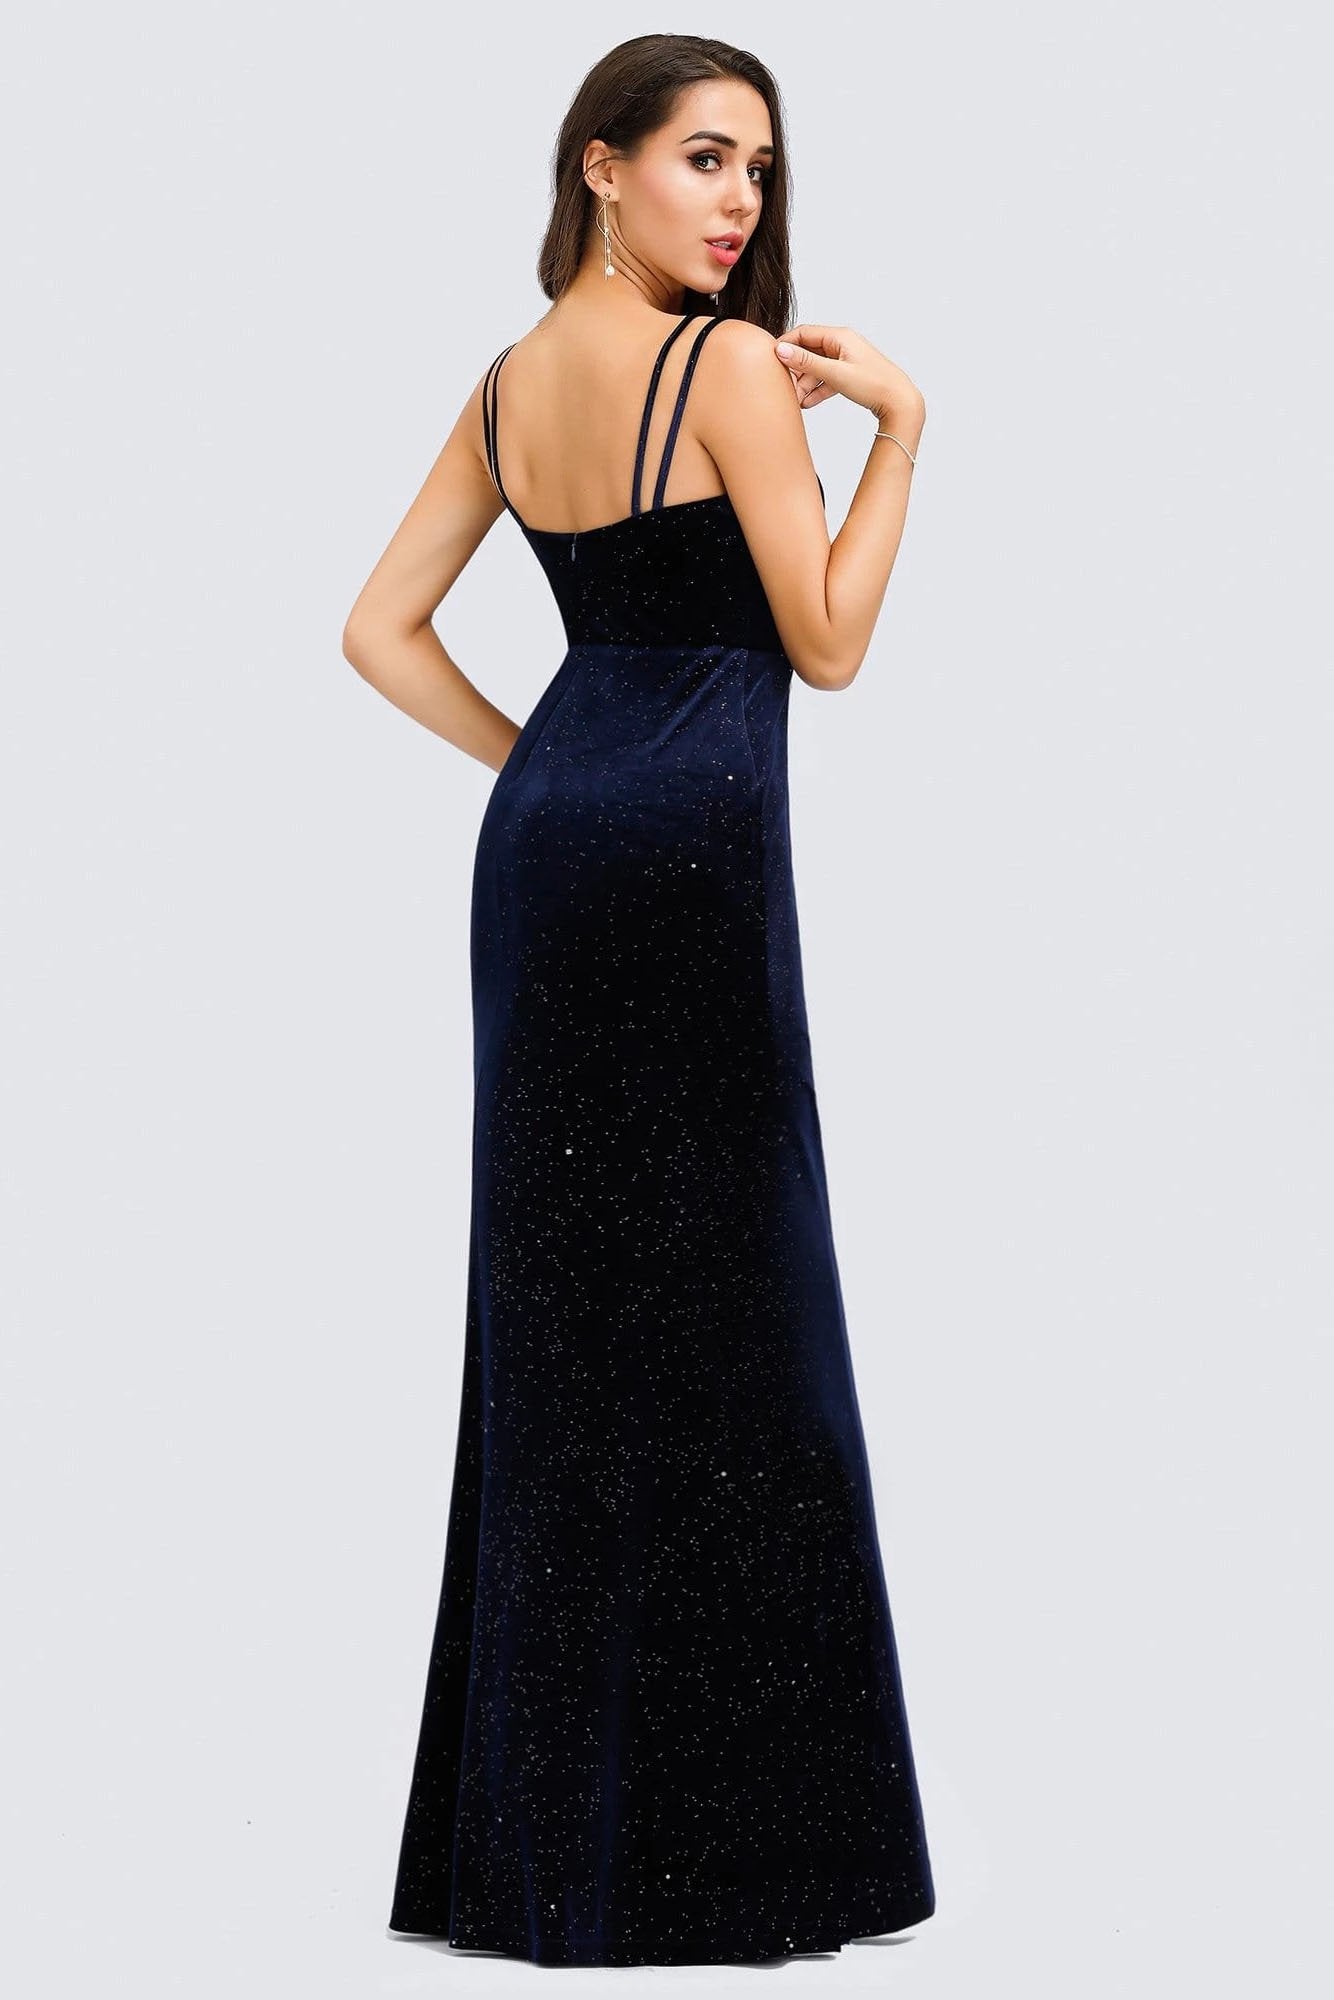 V-Neck Spaghetti Straps Velvet Dark Navy Blue Mermaid Evening Dress, Prom Dresses SWK15480